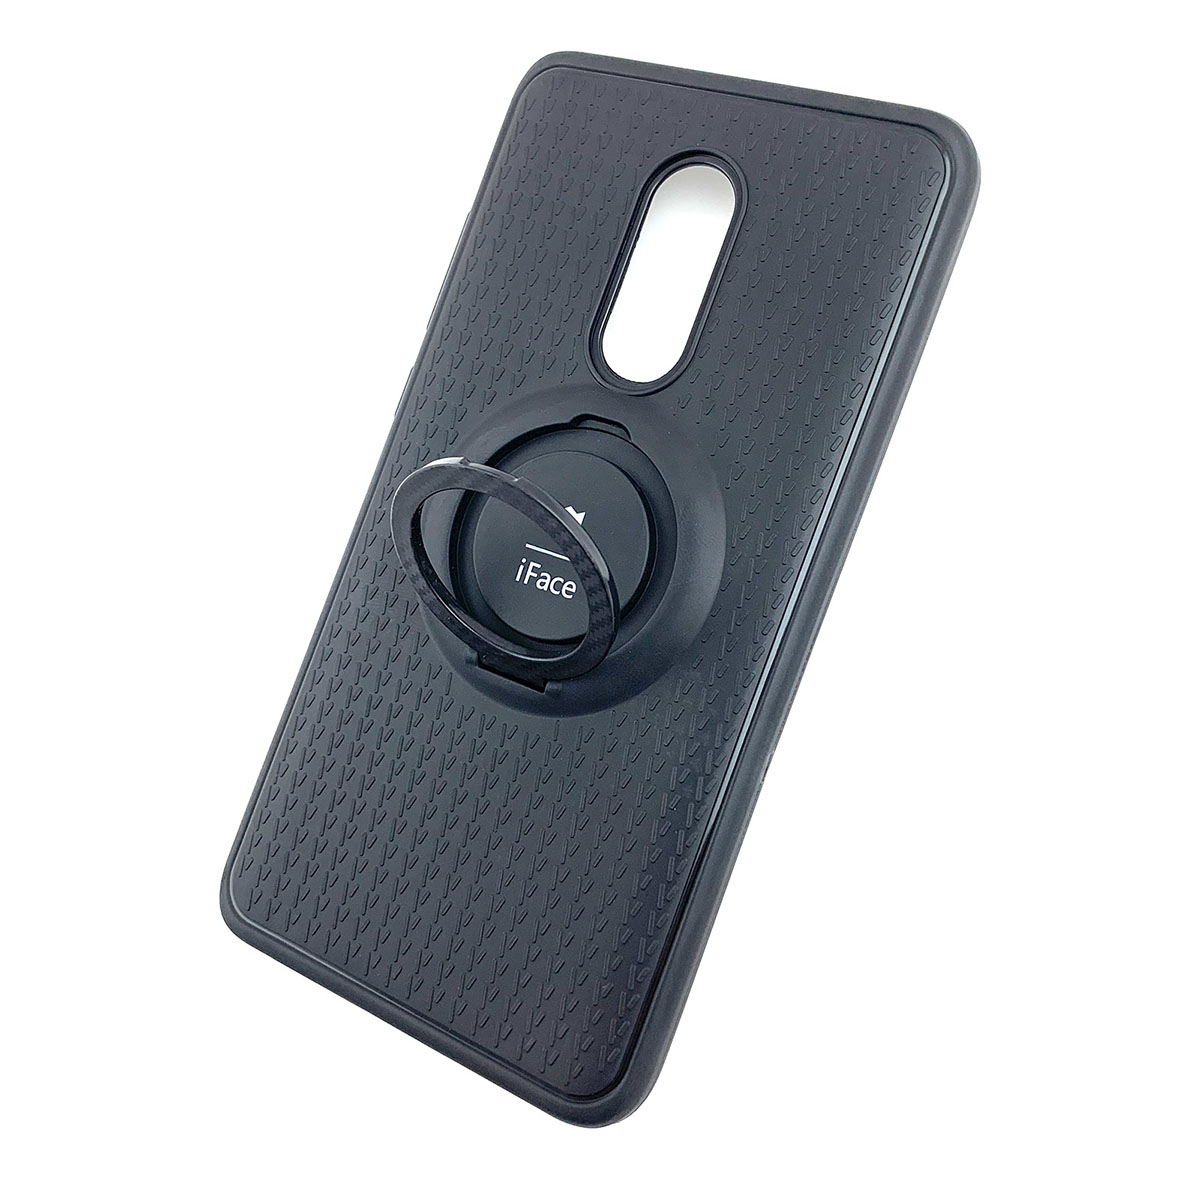 Чехол накладка iFace для XIAOMI Redmi Note 4X, силикон, кольцо держатель, цвет черный.